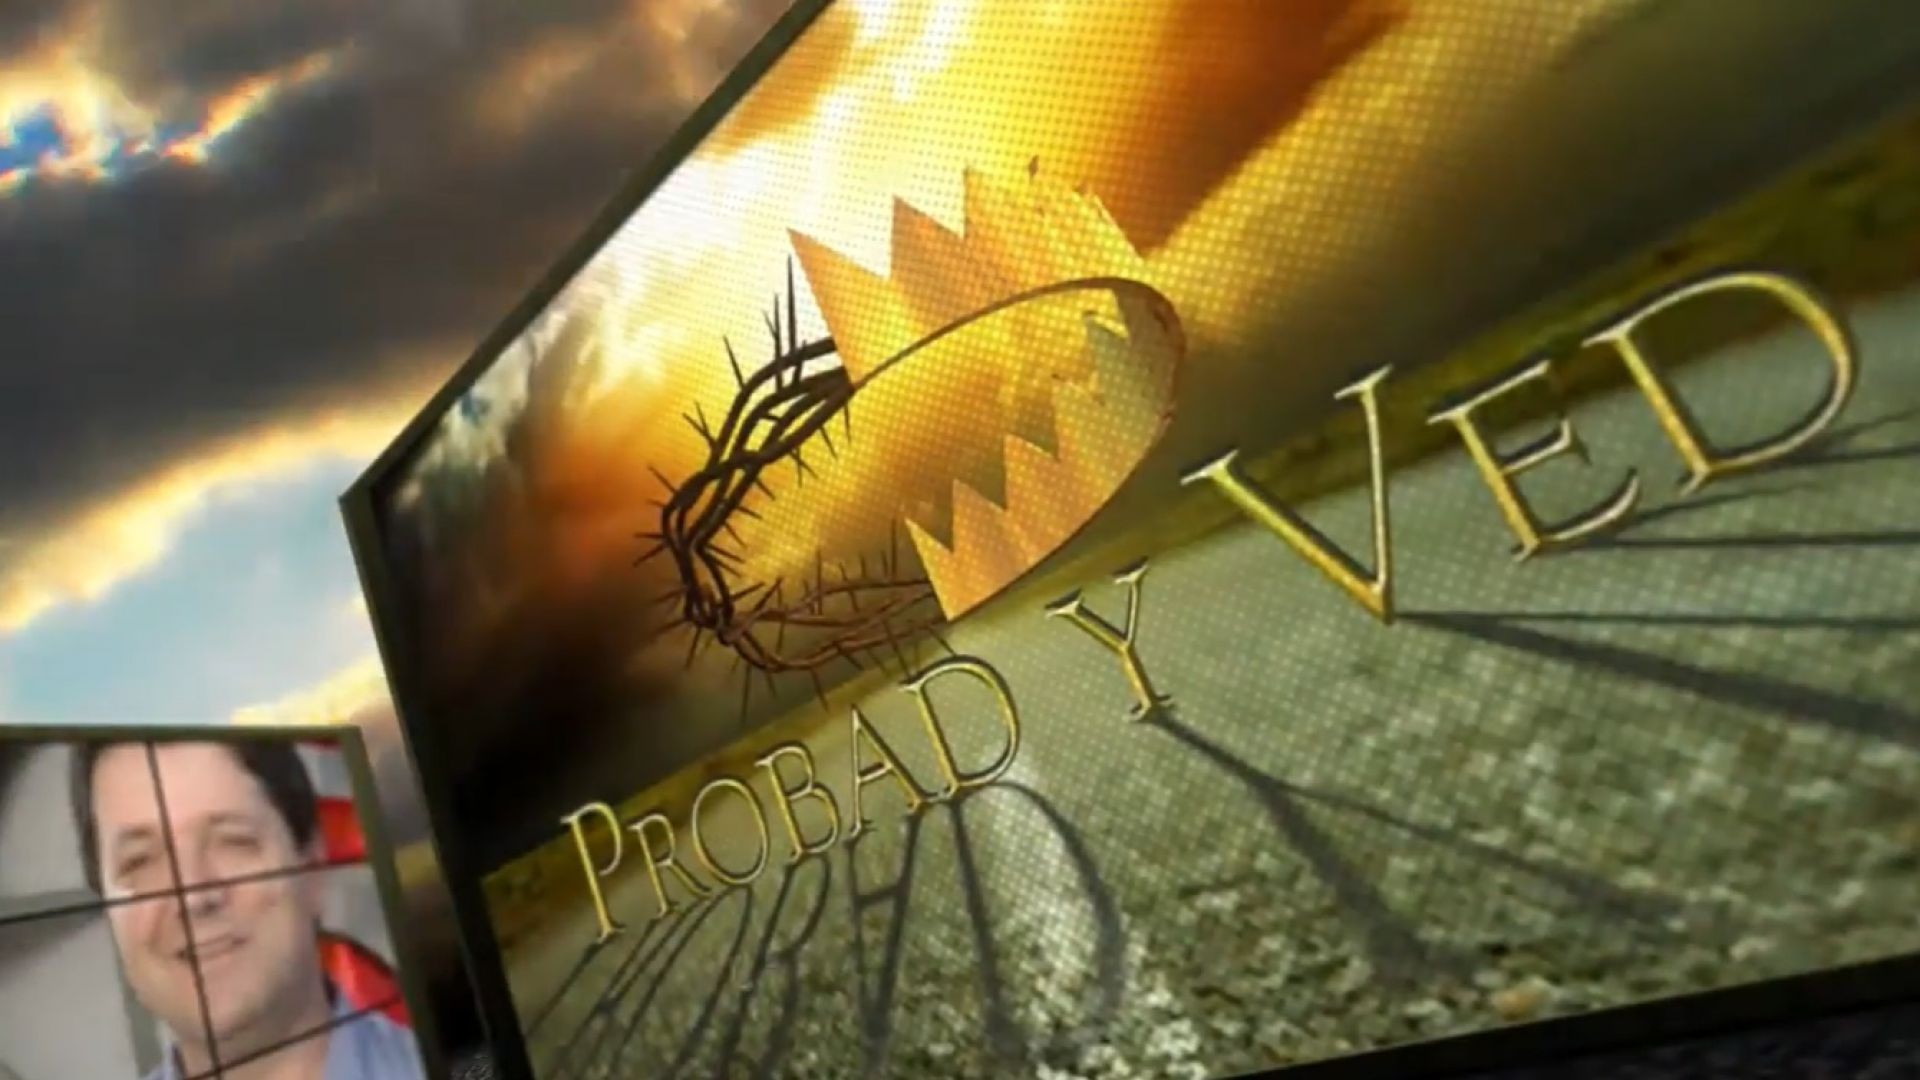 Probad y Ved 2012 - Del campo para Dios